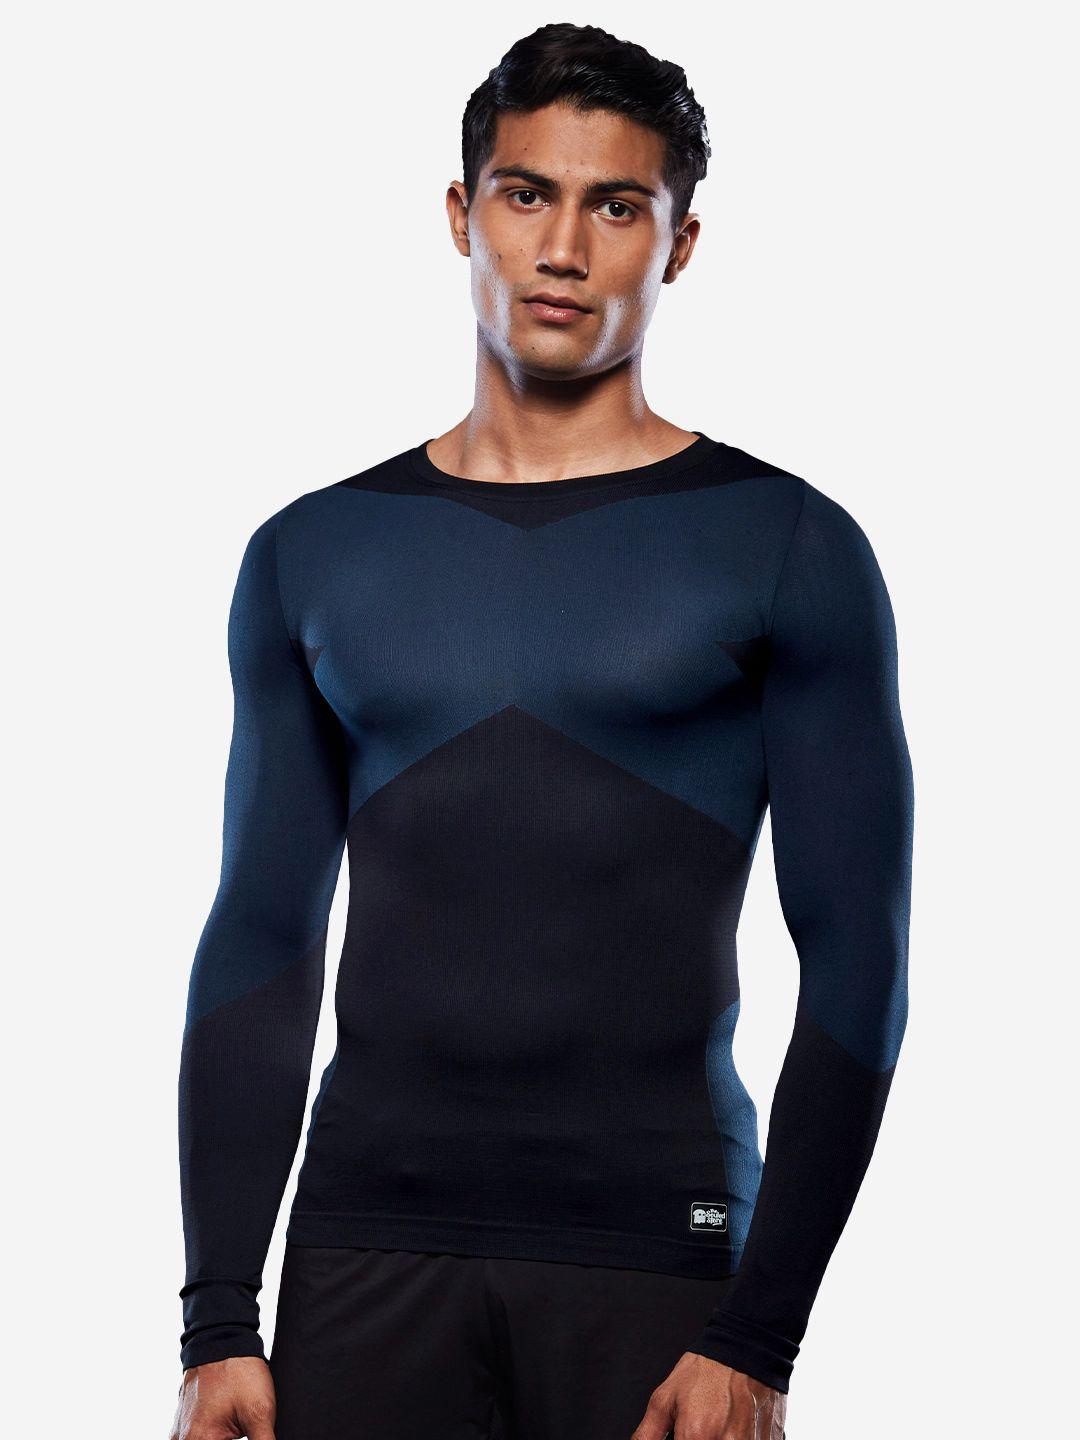 the-souled-store-men-blue-&-black-colourblocked-sports-t-shirt